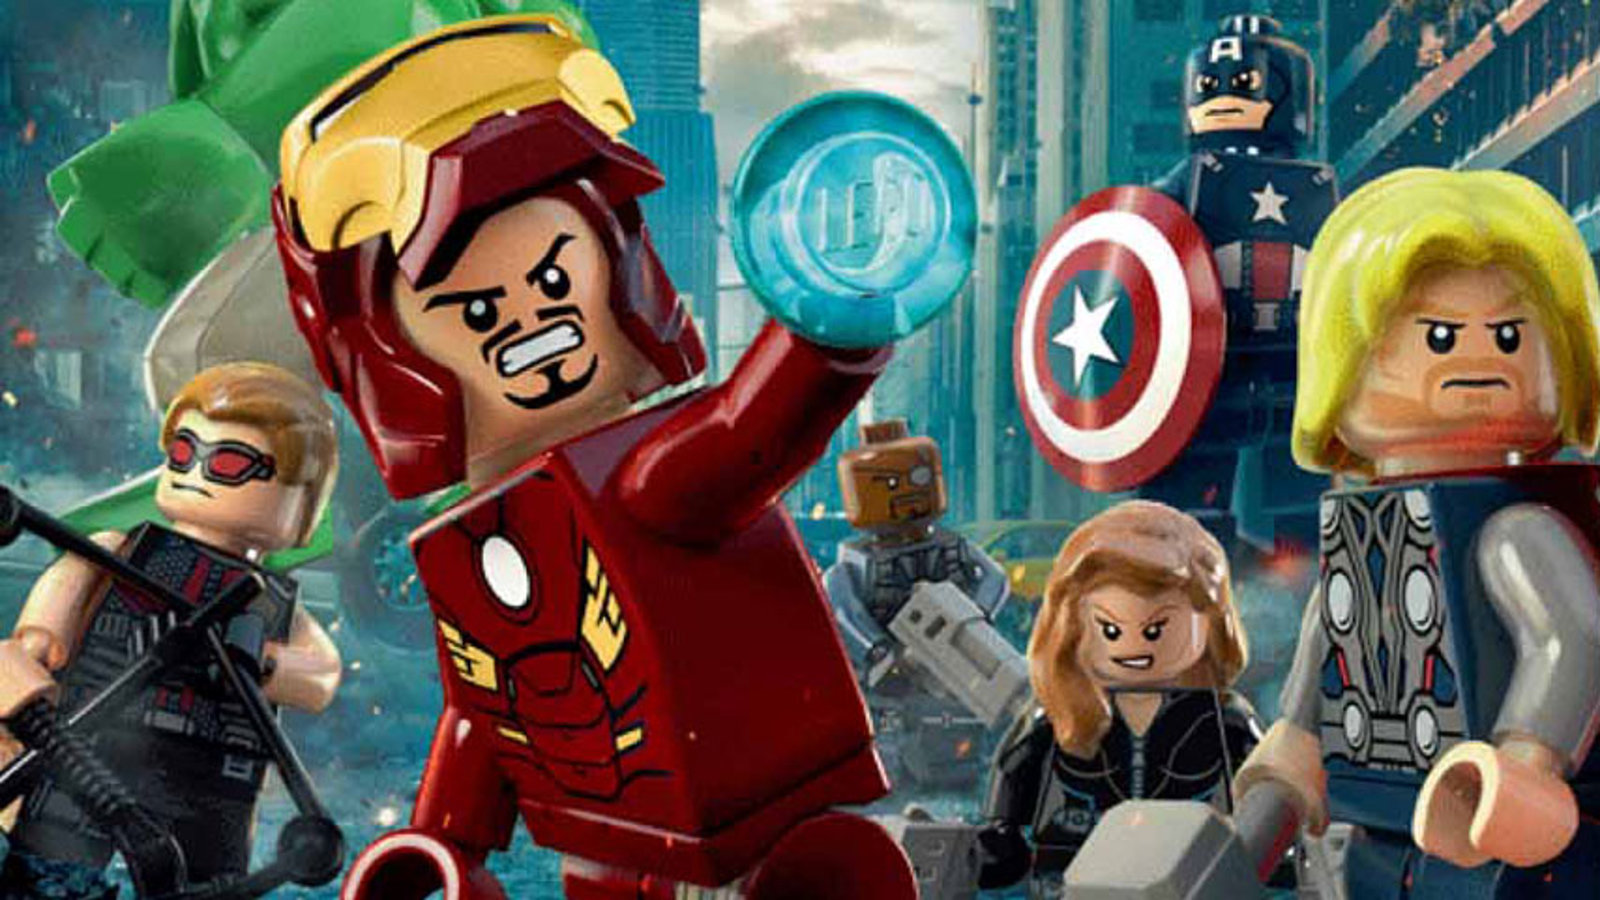 LEGO Marvel's Avengers - NYCC Trailer